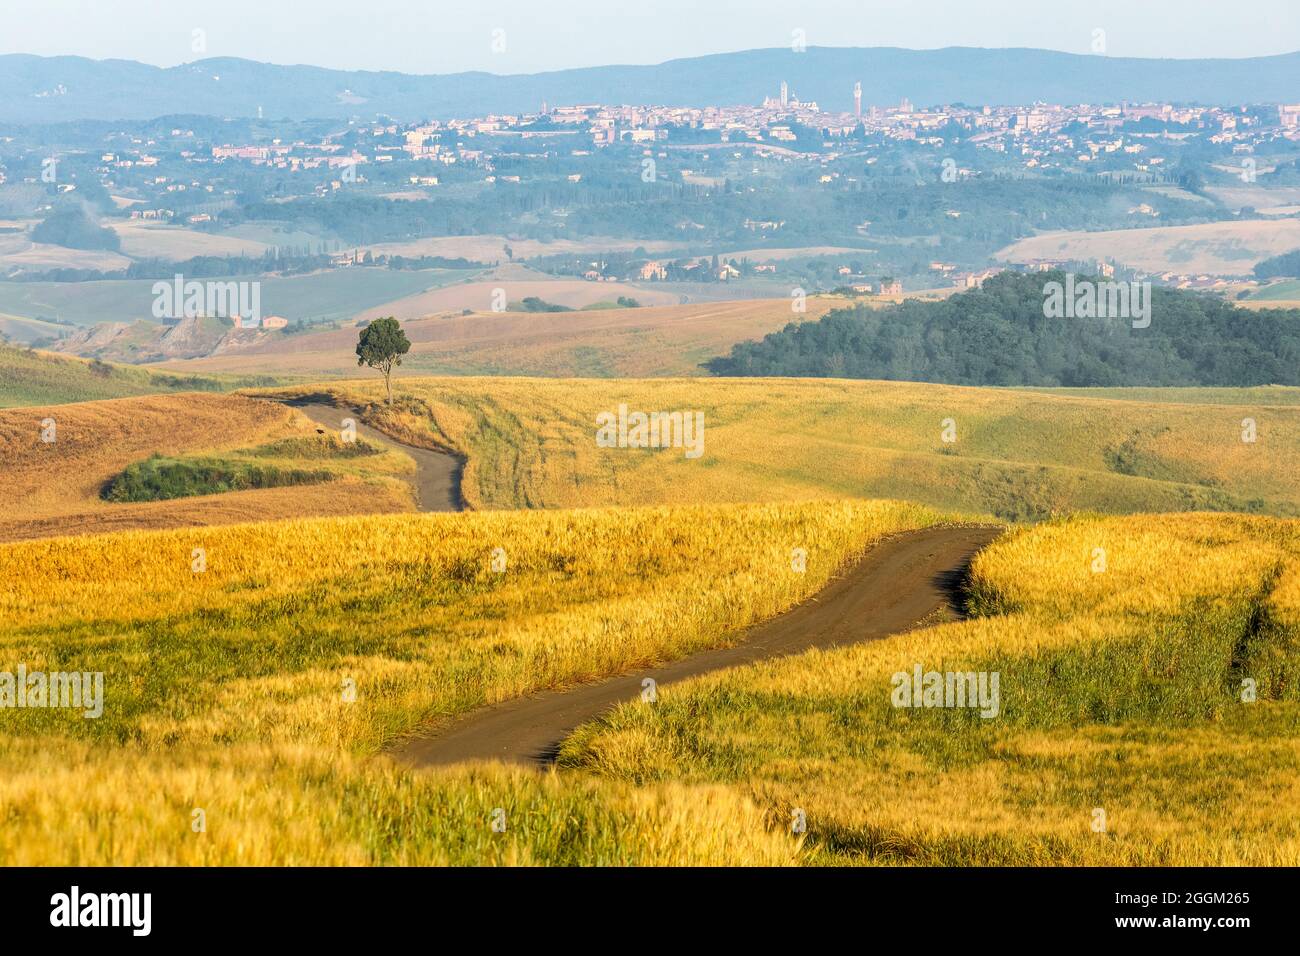 Landstraße zwischen Feldern und einsamen Baum, im Hintergrund die Stadt Siena, Asciano, crete senesi, Provinz siena, toskana, italien Stockfoto